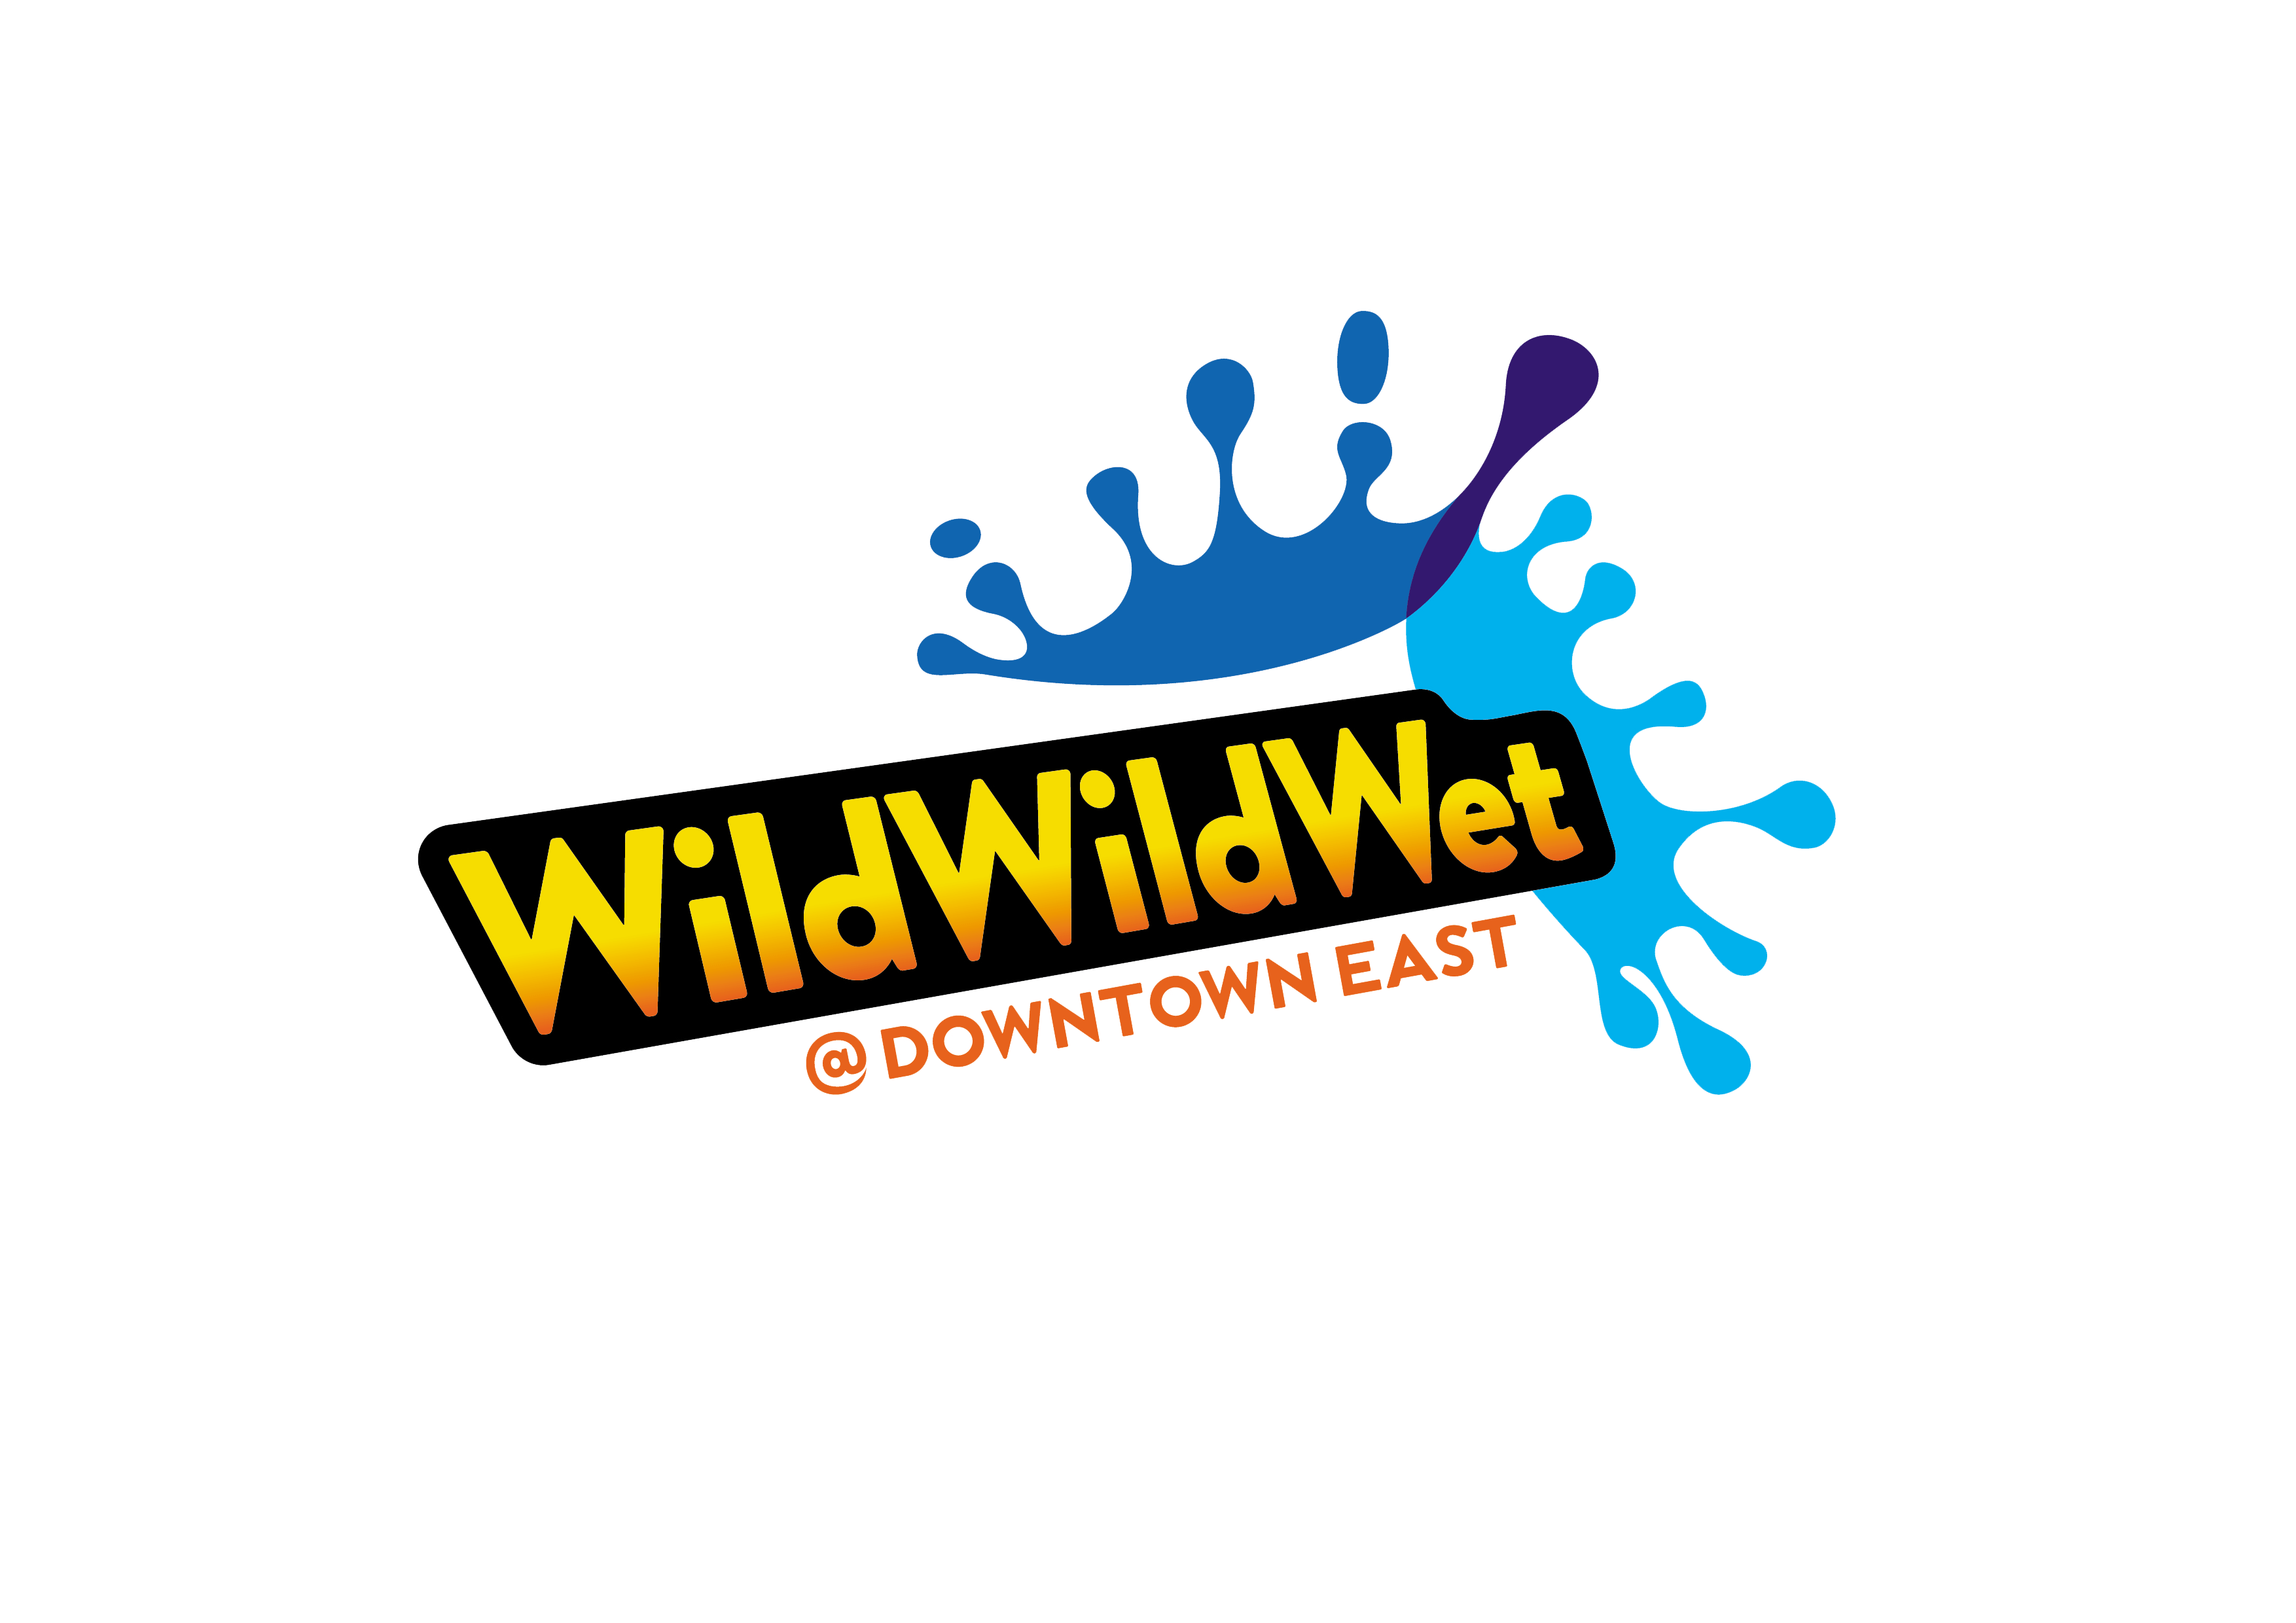 Wild Wild Wet 标志